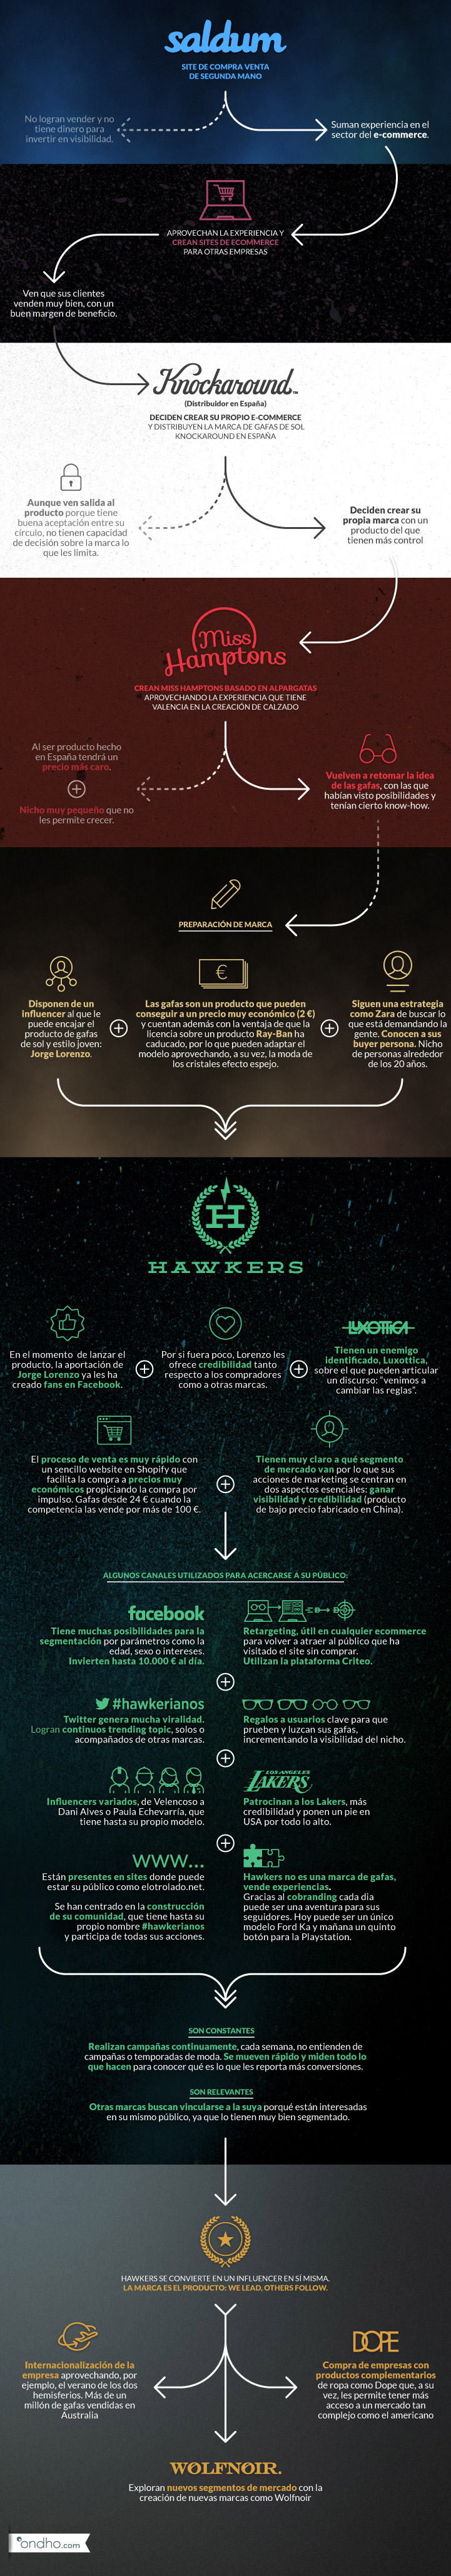 Infografia hawkers